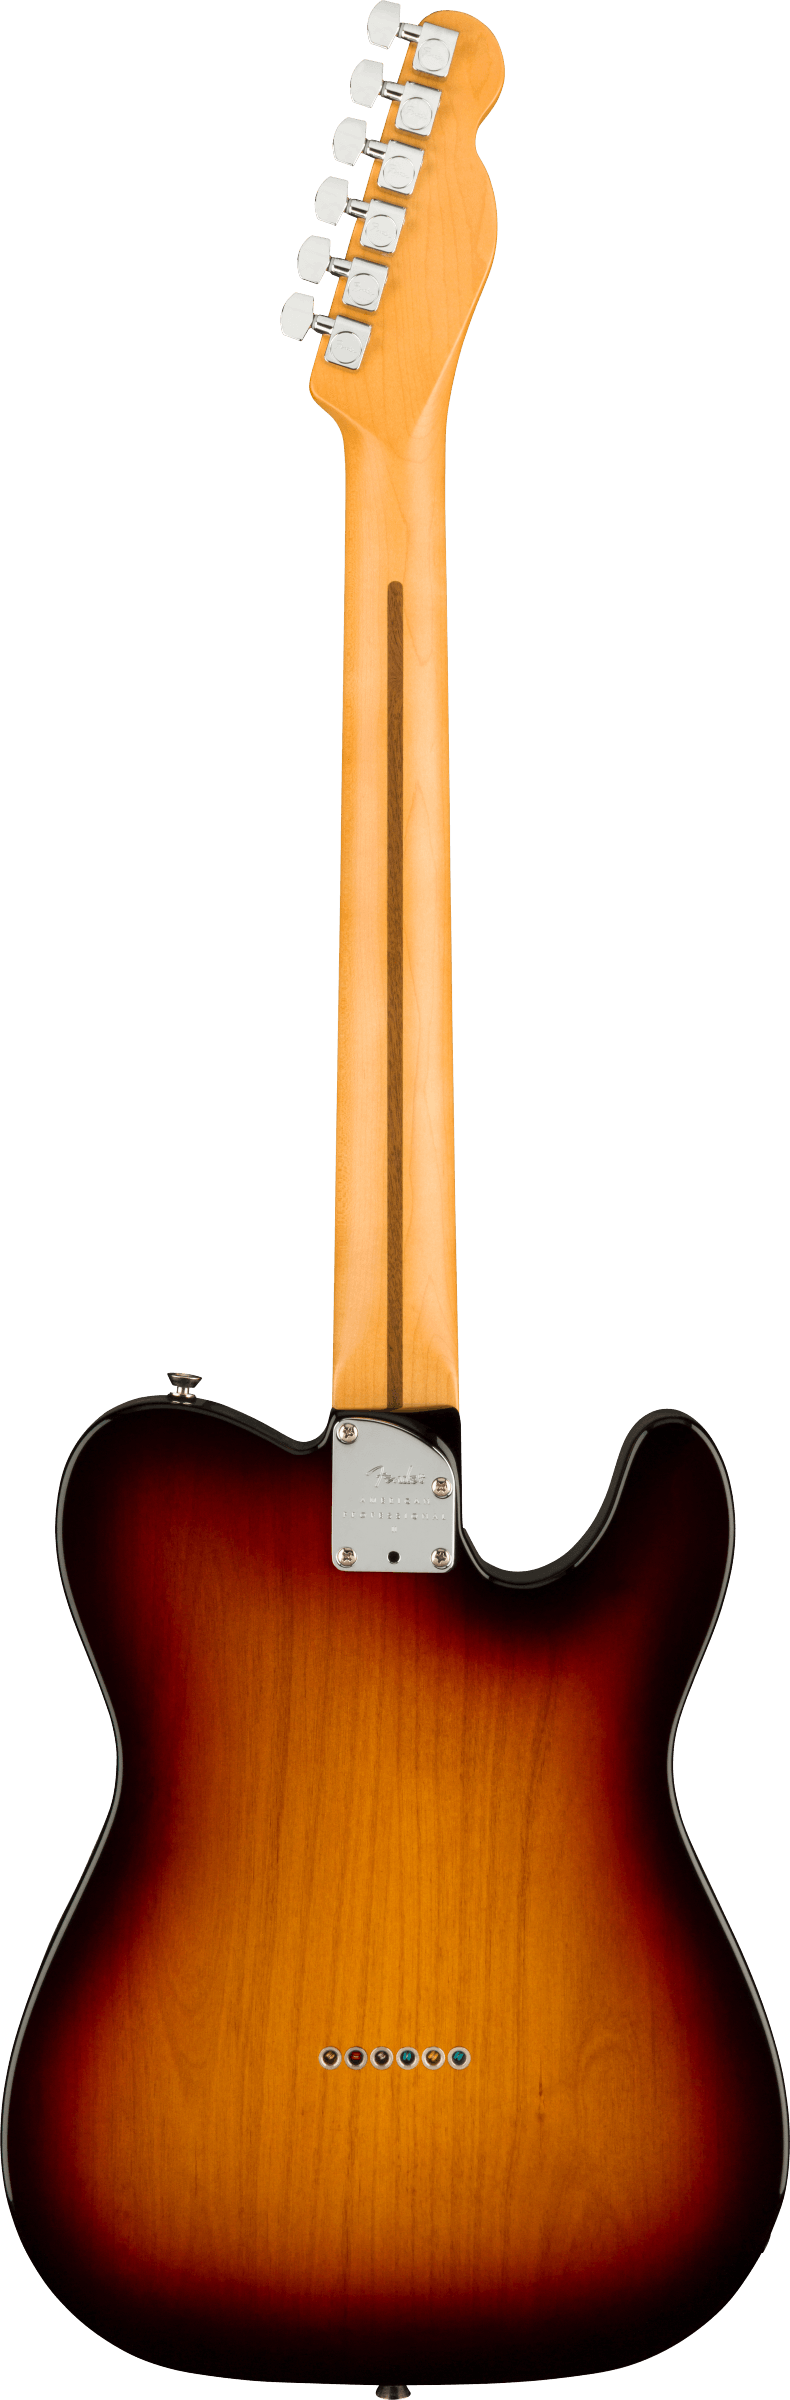 Back of Fender Telecaster Left-Hand electric guitar in 3 Color Sunburst Tone Shop Guitars DFW